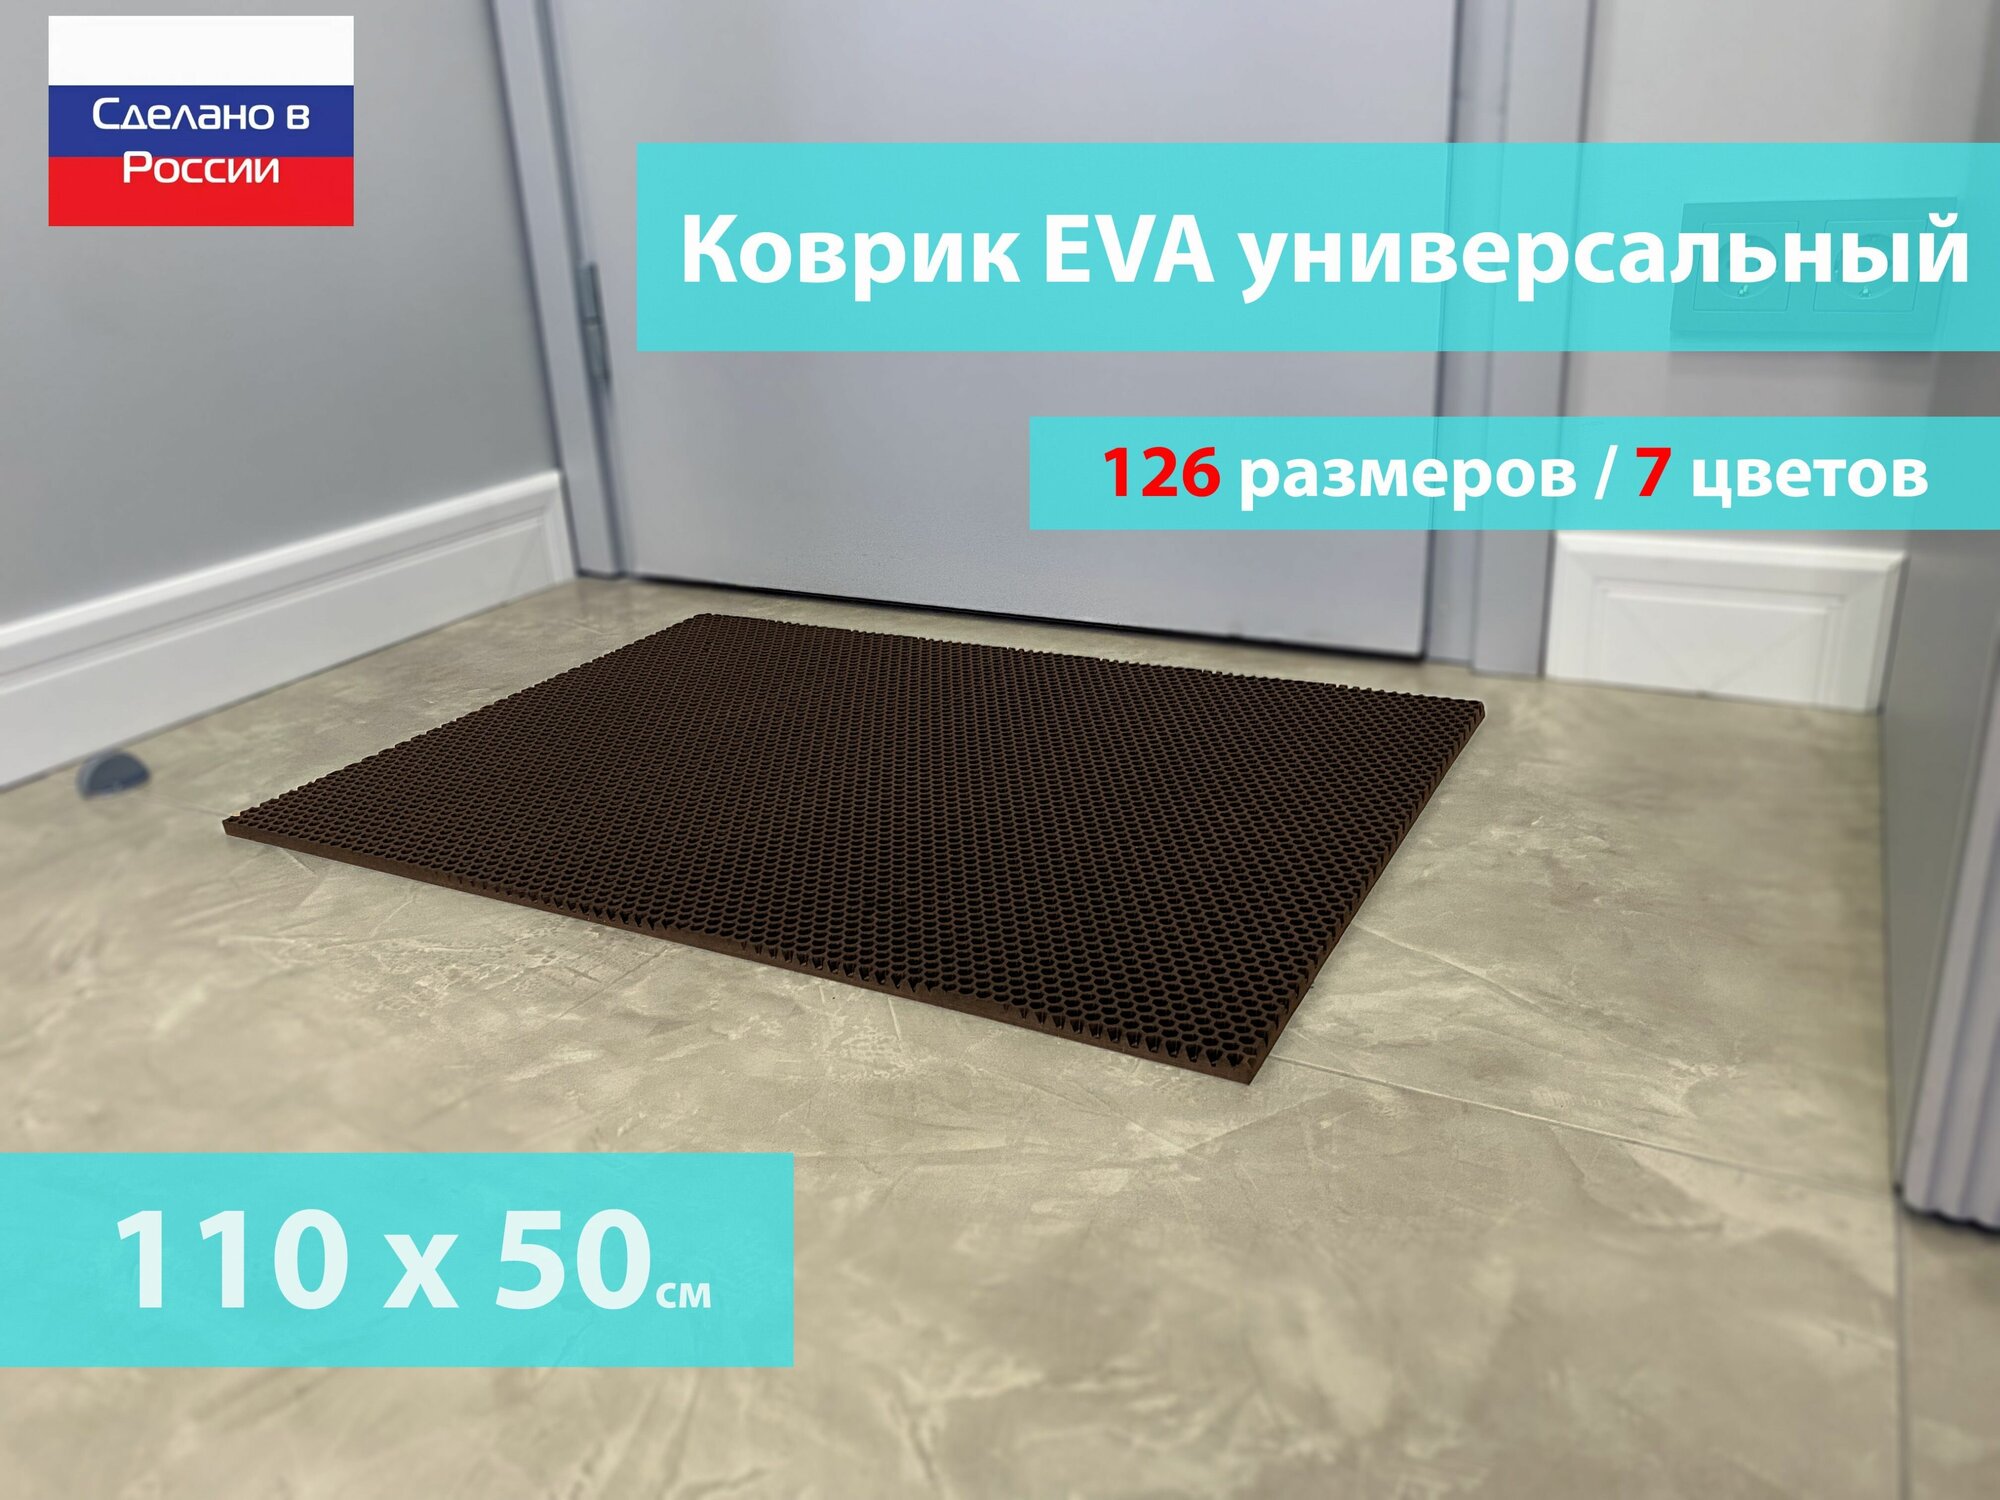 Коврик придверный EVA (ЕВА) в прихожую для обуви / Ковер ЭВА на пол перед дверью/ коричневый / размер 110 х 50 см